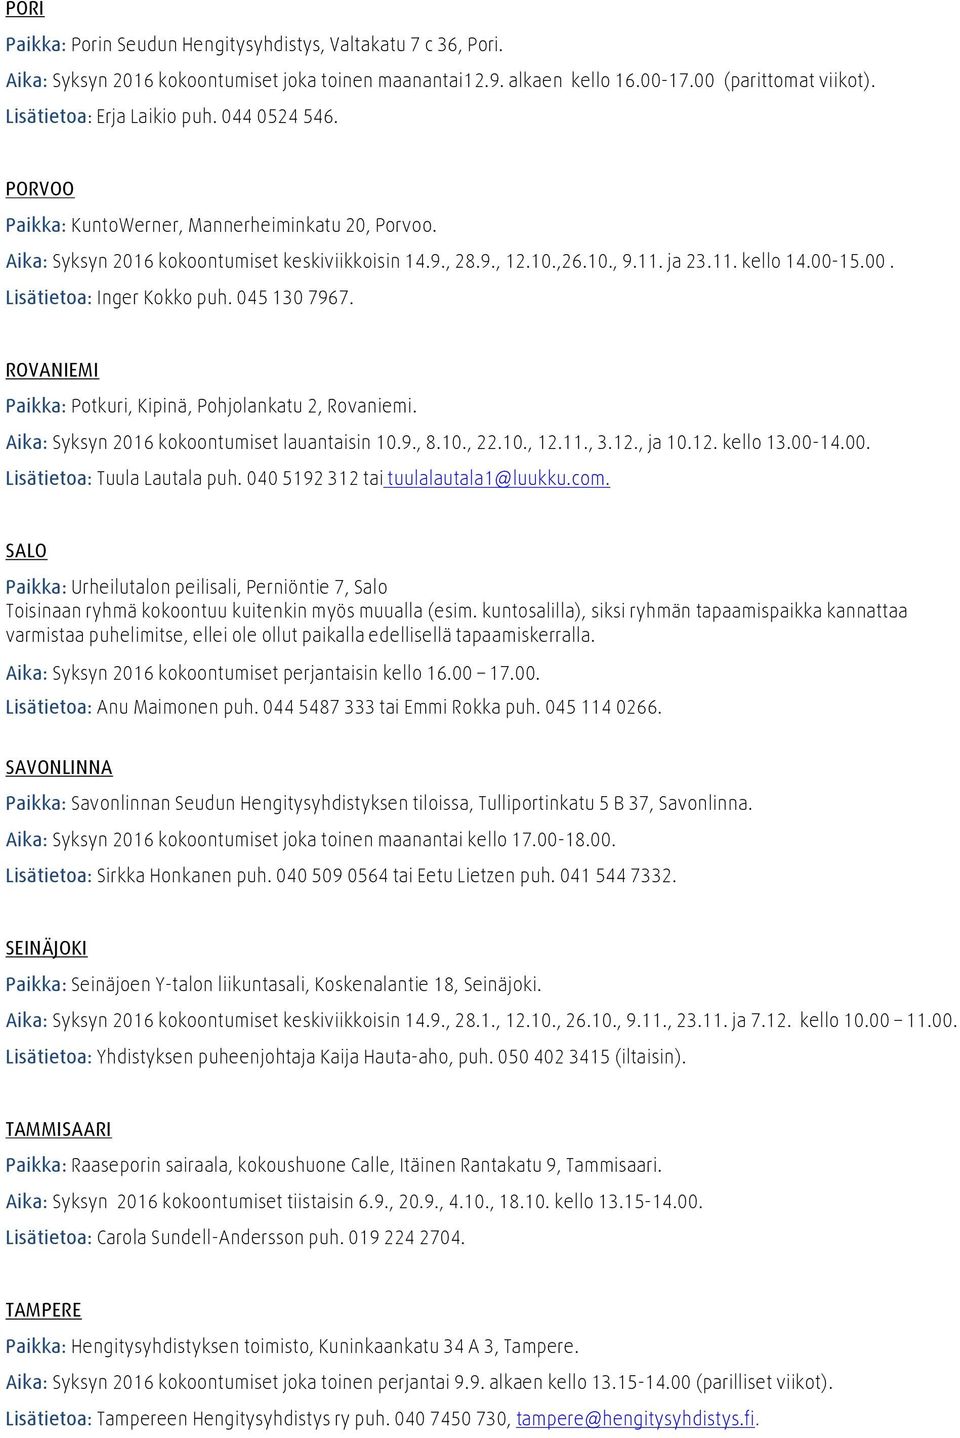 00-15.00. Lisätietoa: Inger Kokko puh. 0451307967. ROVANIEMI Paikka: Potkuri, Kipinä, Pohjolankatu 2, Rovaniemi. Aika: Syksyn 2016 kokoontumiset lauantaisin 10.9., 8.10., 22.10., 12.11., 3.12., ja 10.